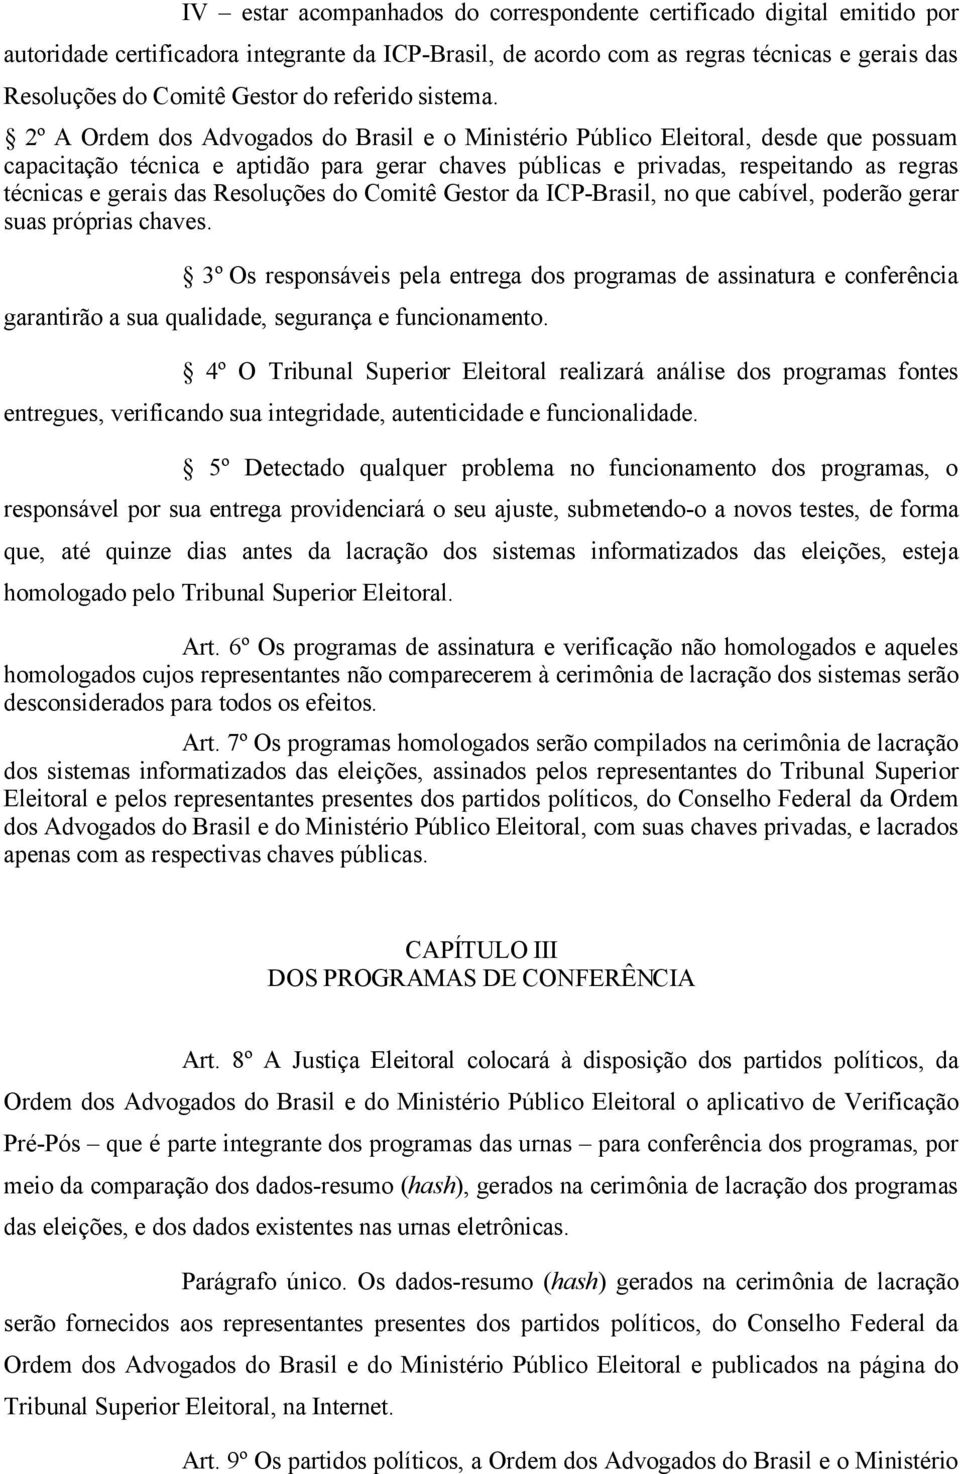 2º A Ordem dos Advogados do Brasil e o Ministério Público Eleitoral, desde que possuam capacitação técnica e aptidão para gerar chaves públicas e privadas, respeitando as regras técnicas e gerais das